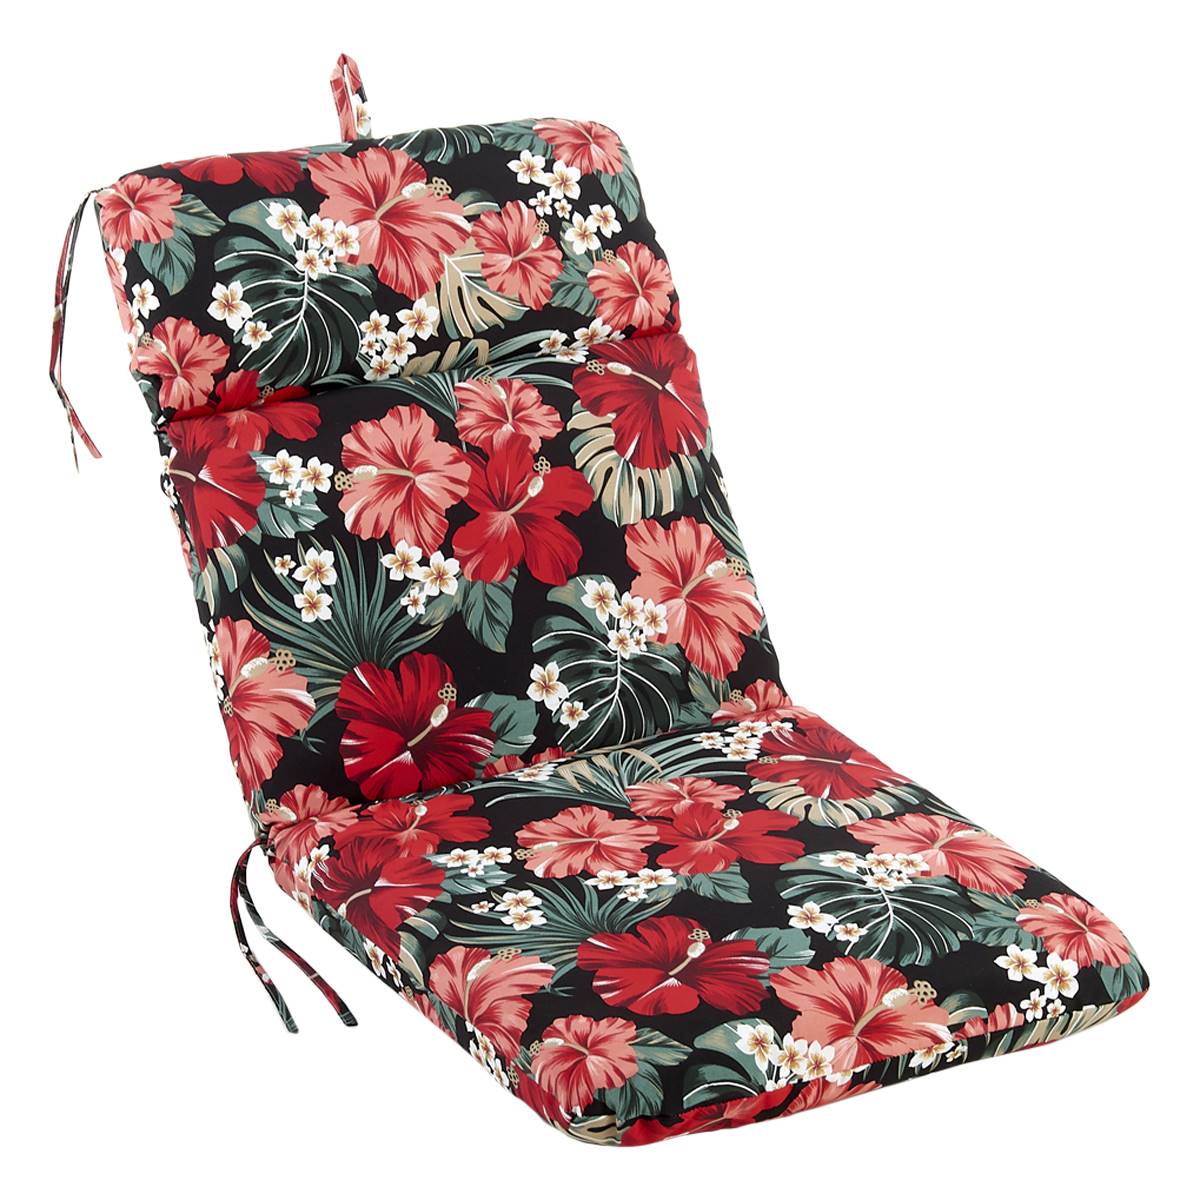 Jordan Manufacturing High Back Chair Cushion - Black Floral